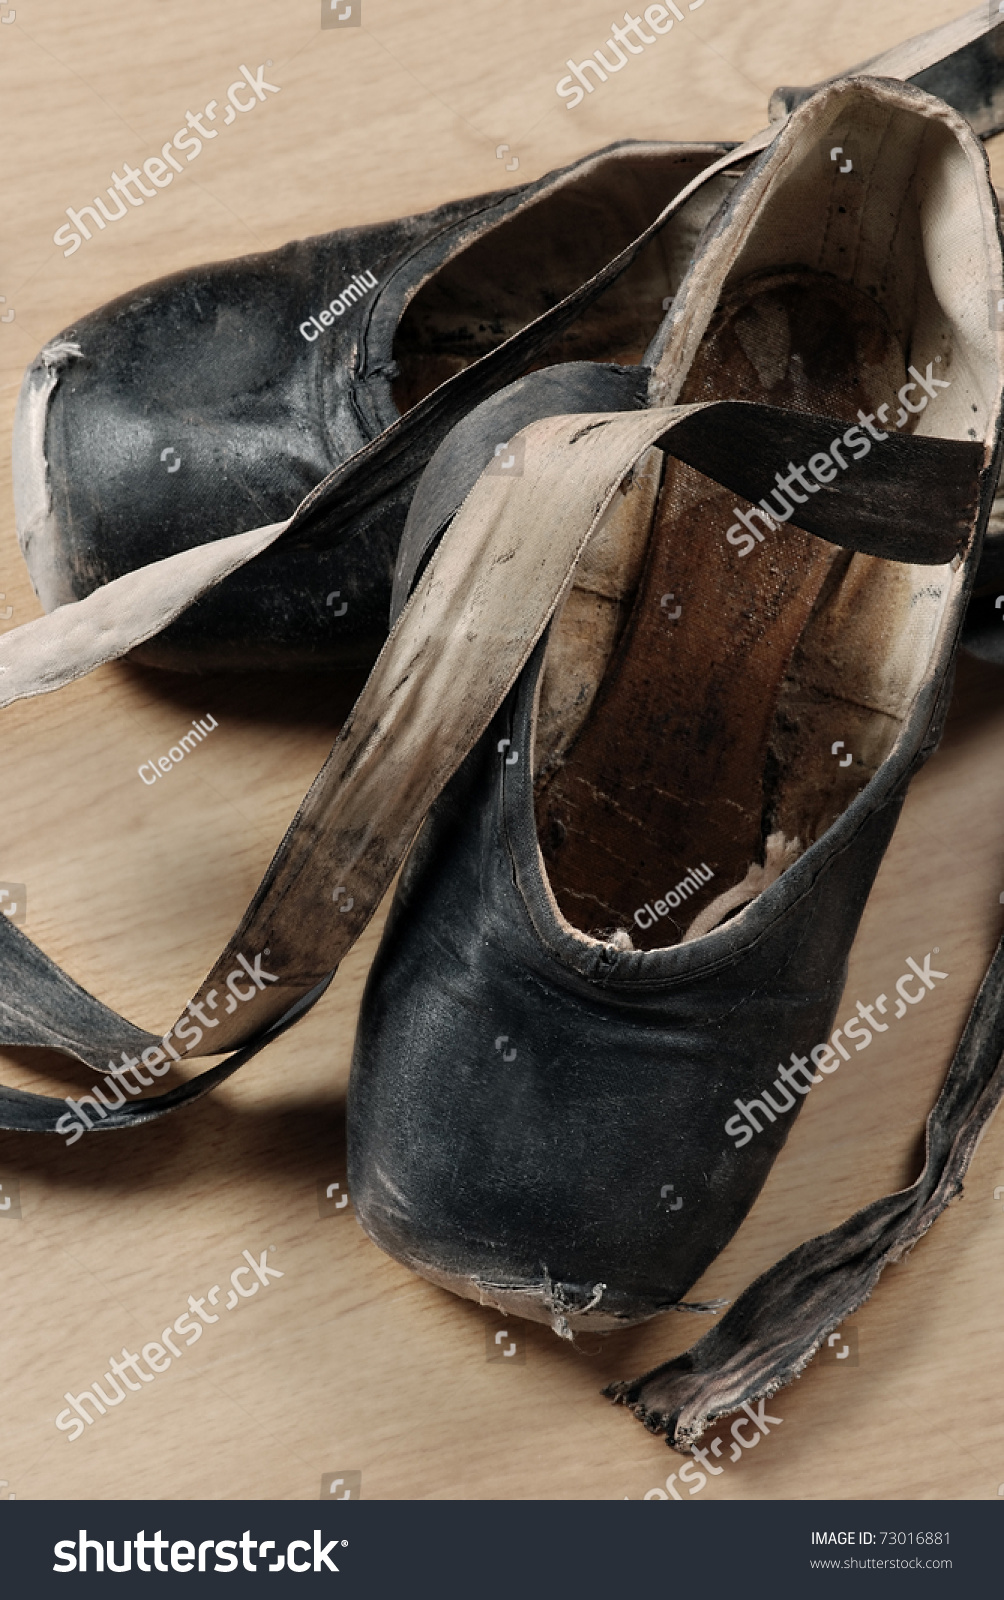 Arabiske Sarabo sammenholdt sandsynlighed Pair Well Worn Black Ballet Shoes Stock Photo (Edit Now) 73016881